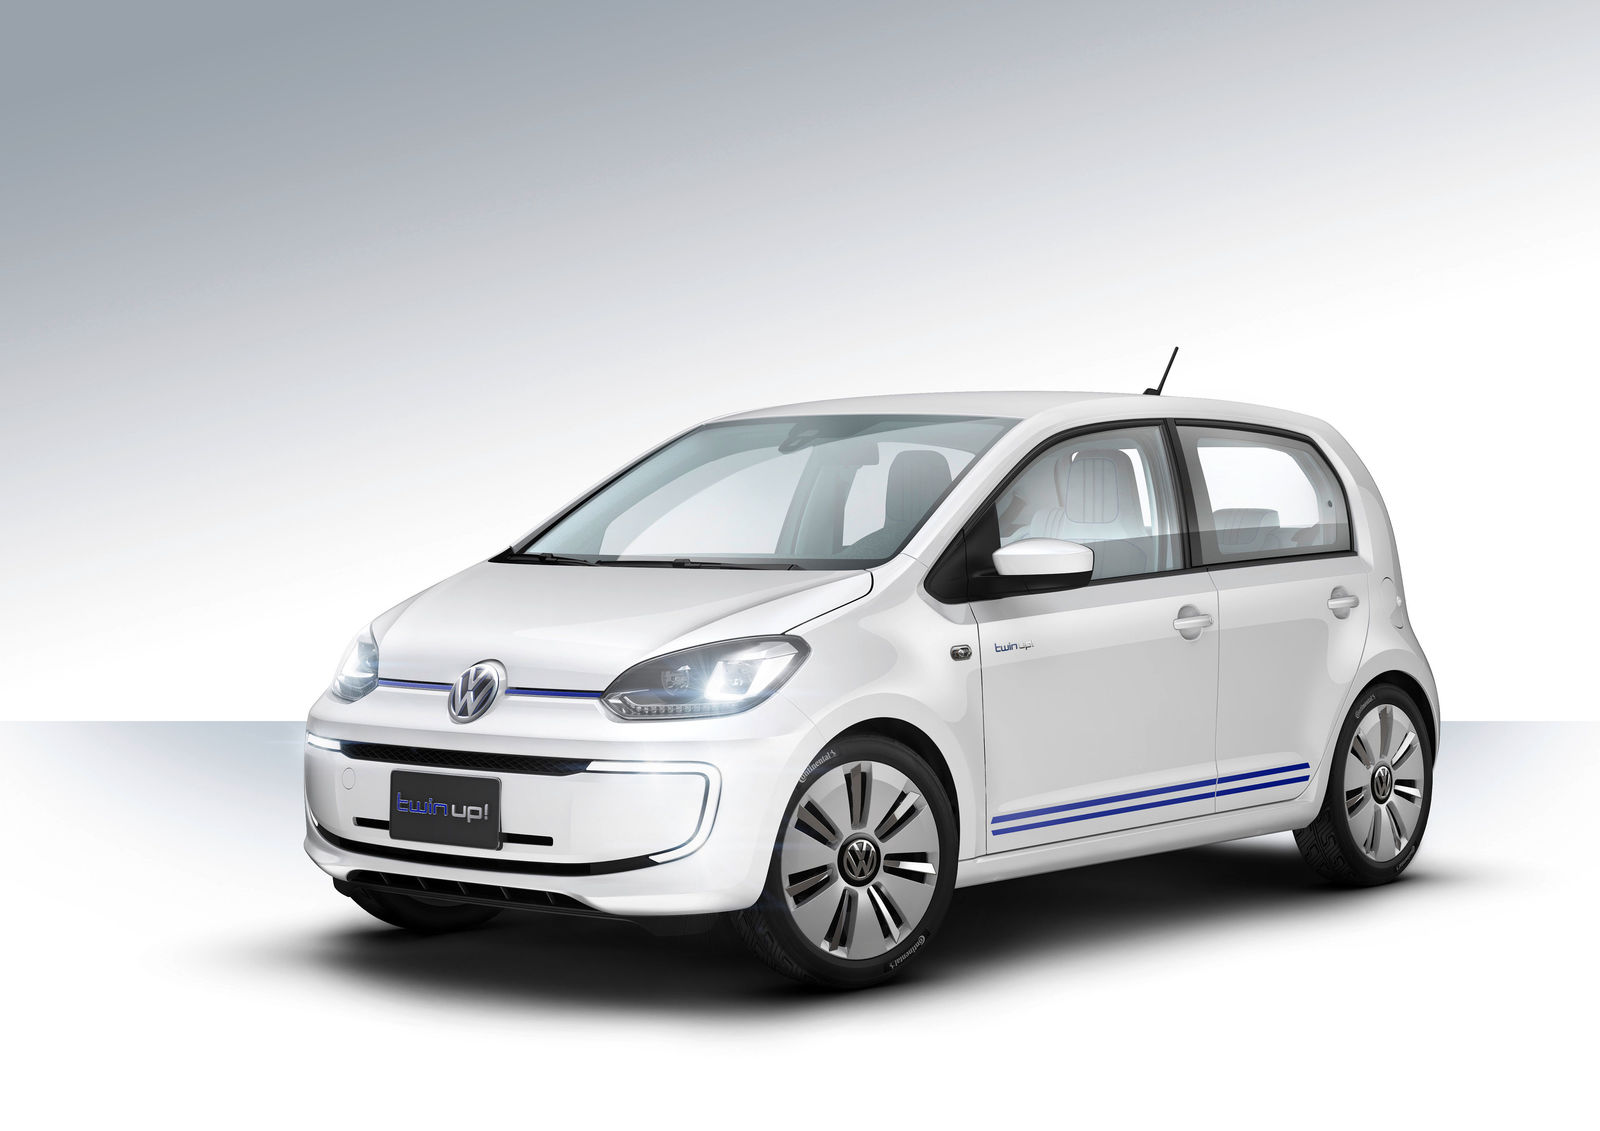 Volkswagen twin up! concept car